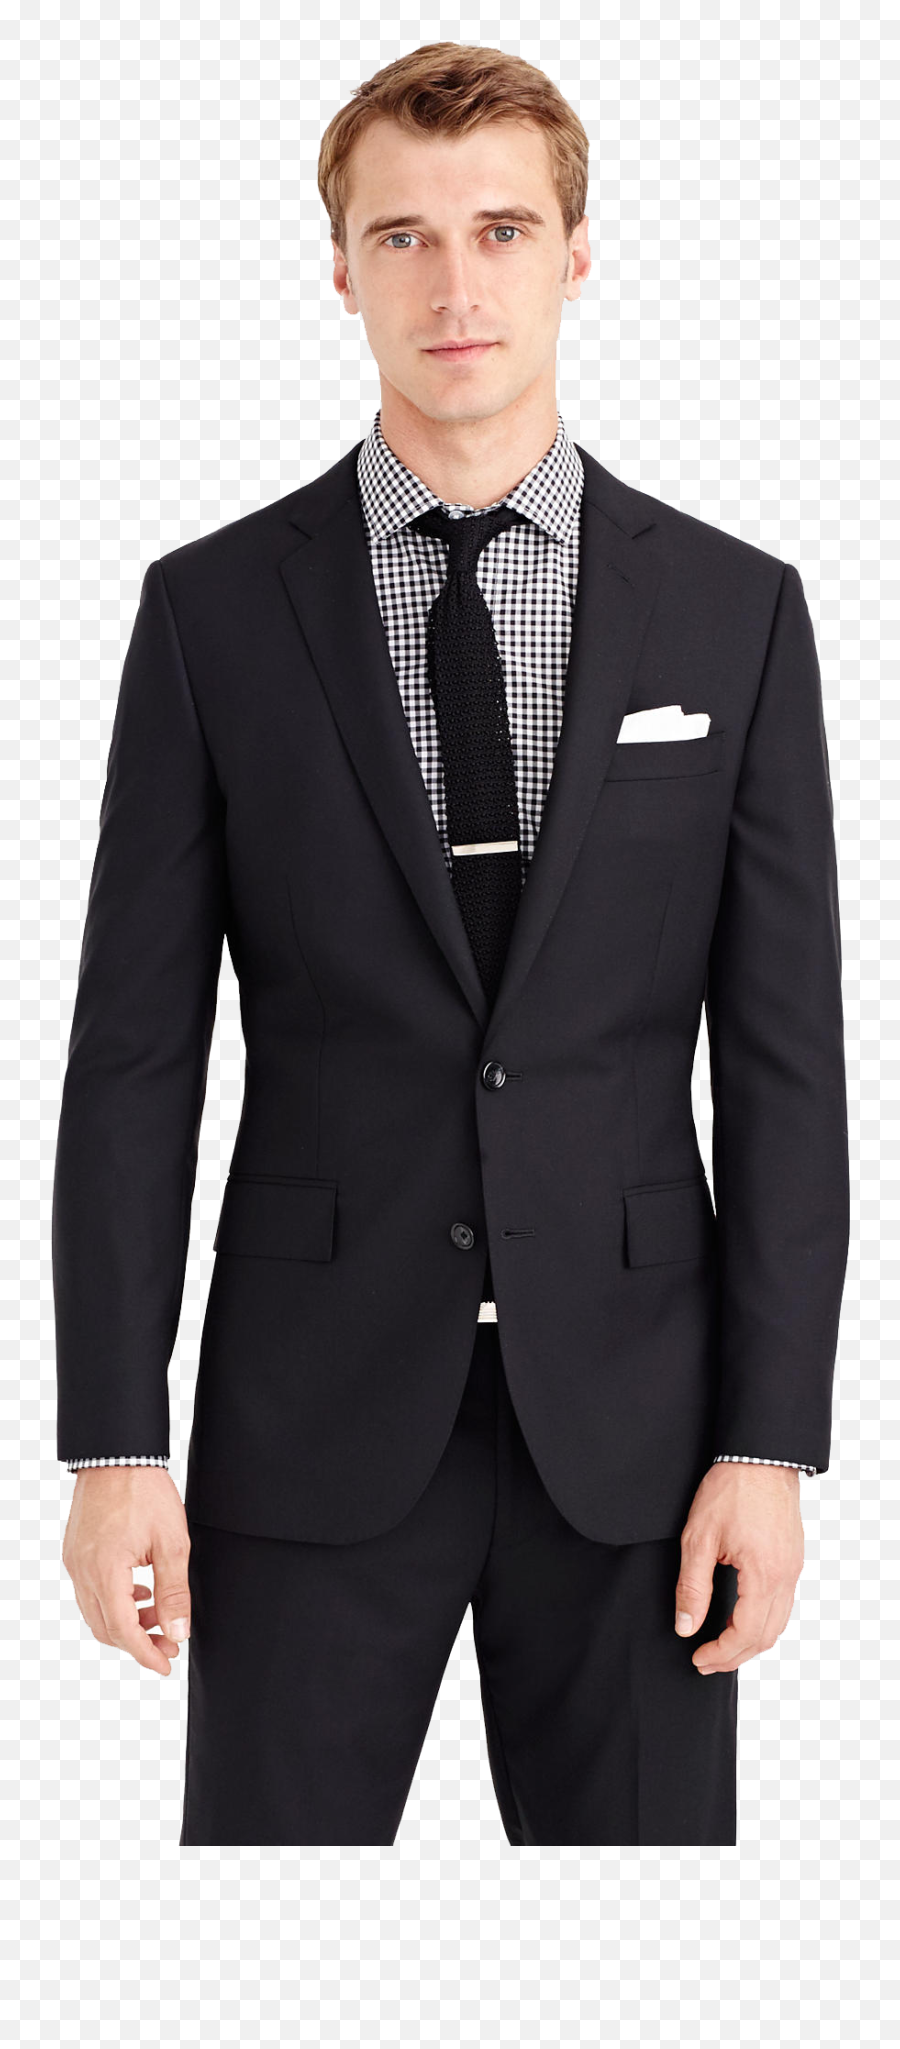 Coat Pant Background - Black Suit Png,Man In Suit Transparent Background